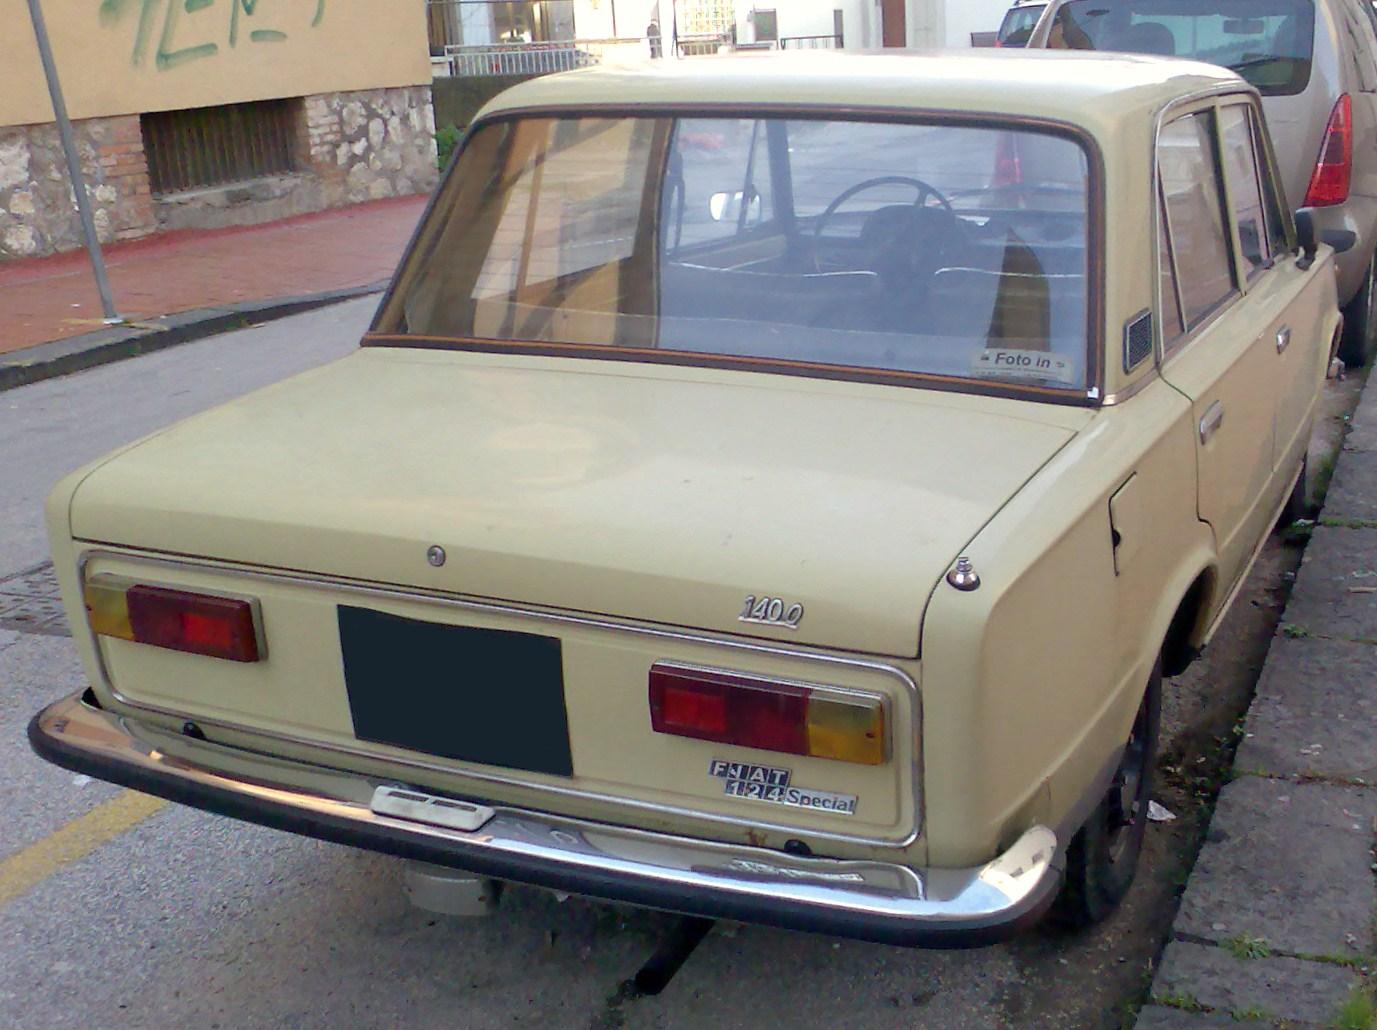 Fiat_124_Special_rear.jpg